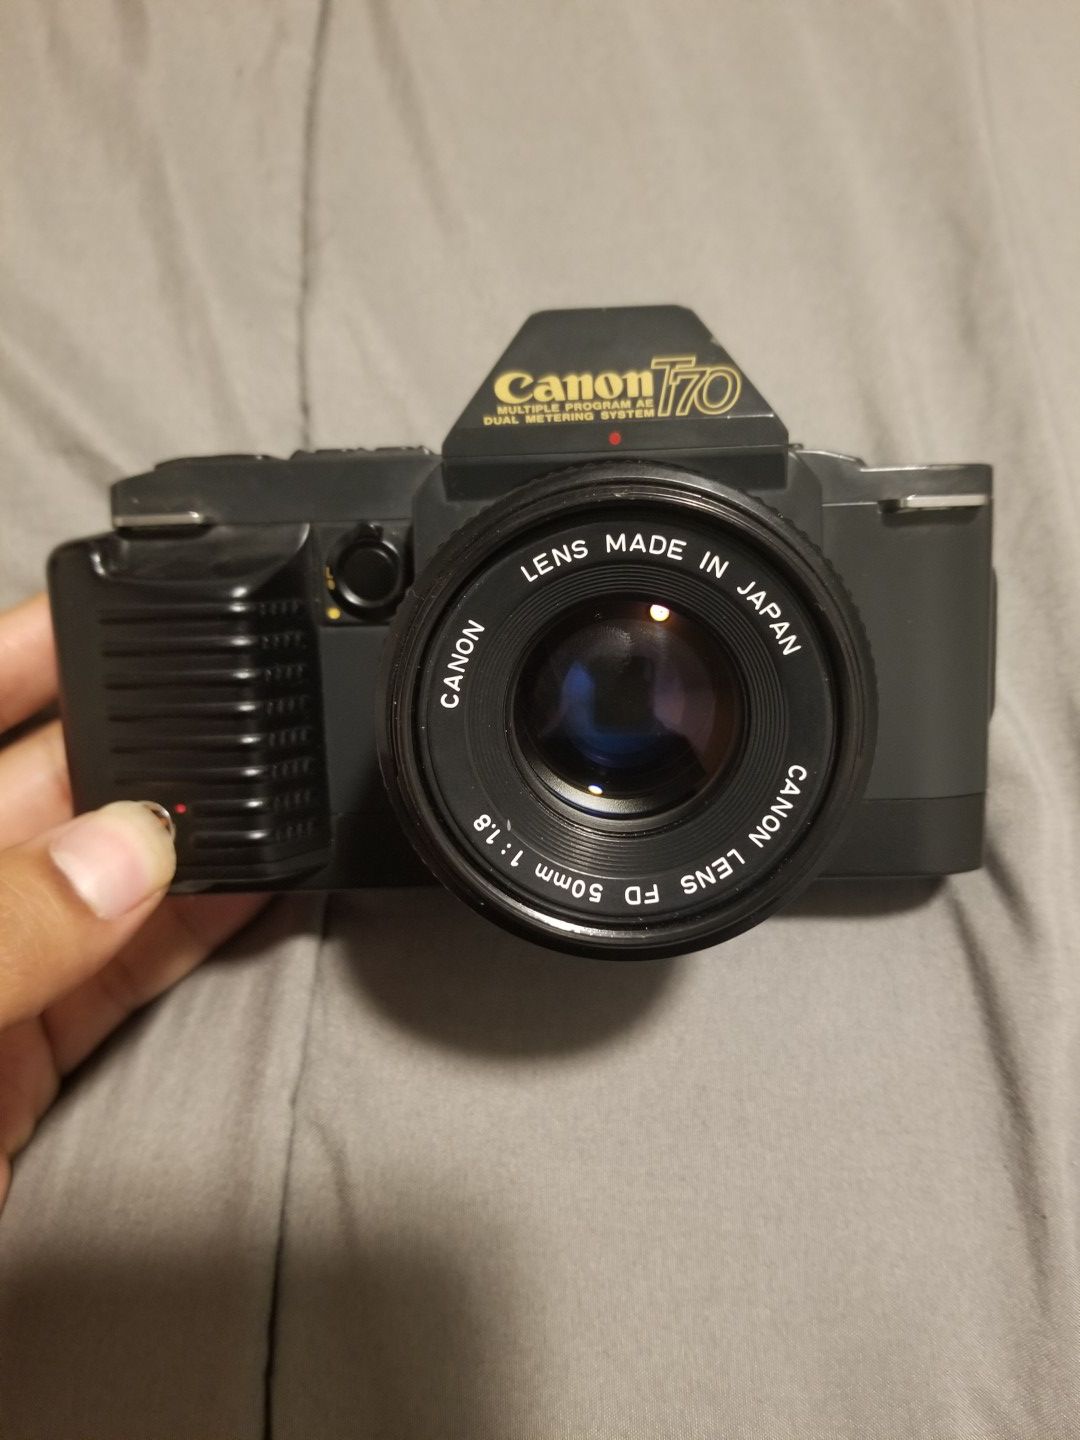 Canon T70 SLR 35mm Film Camera w 50mm 1.8 Lens